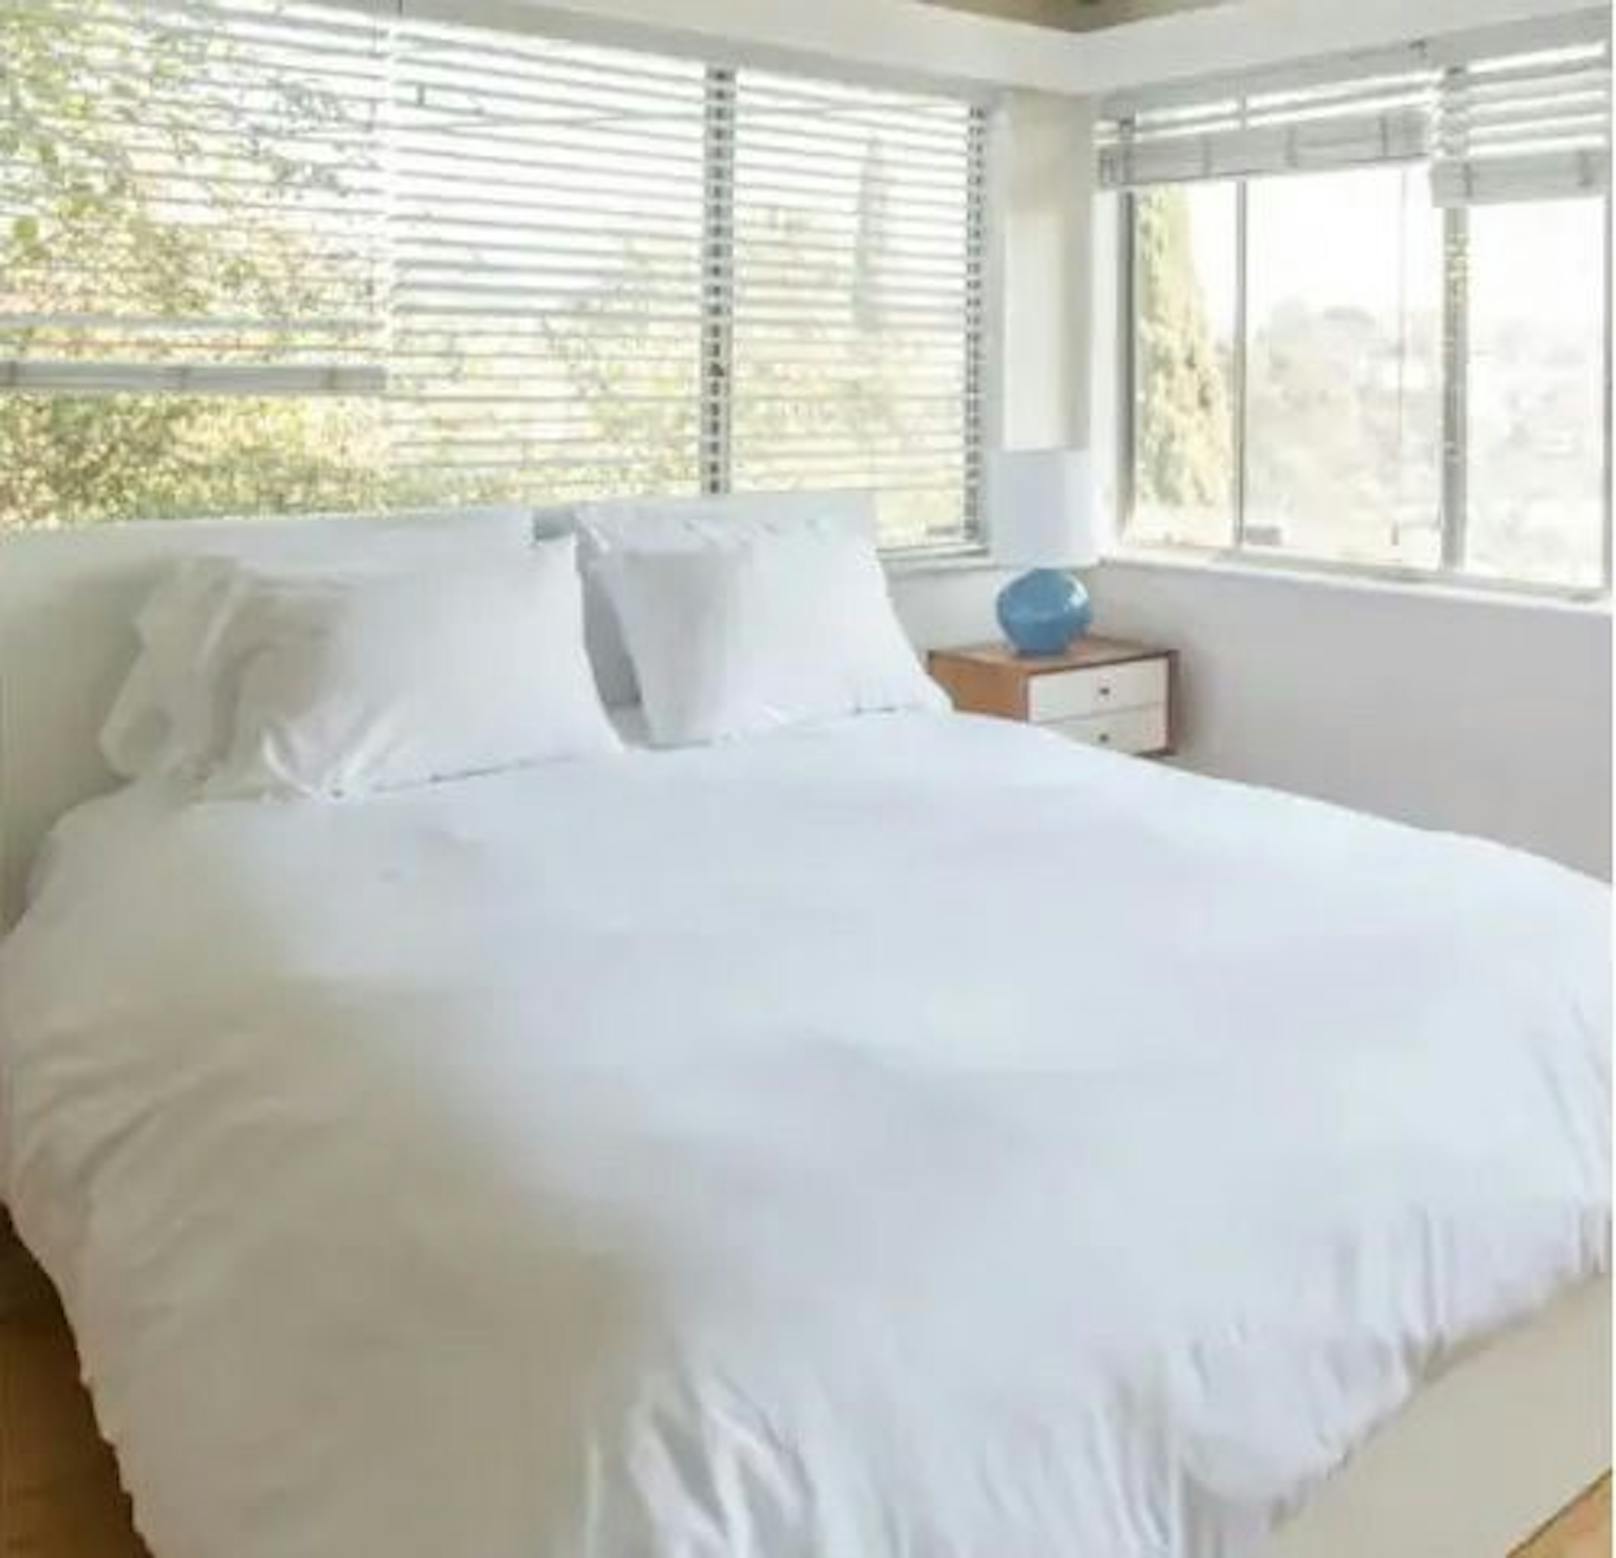 Auf Airbnb kann man gutes Geld verdienen. Voraussetzung: Eine Wohnung in einer attraktiven Lage.